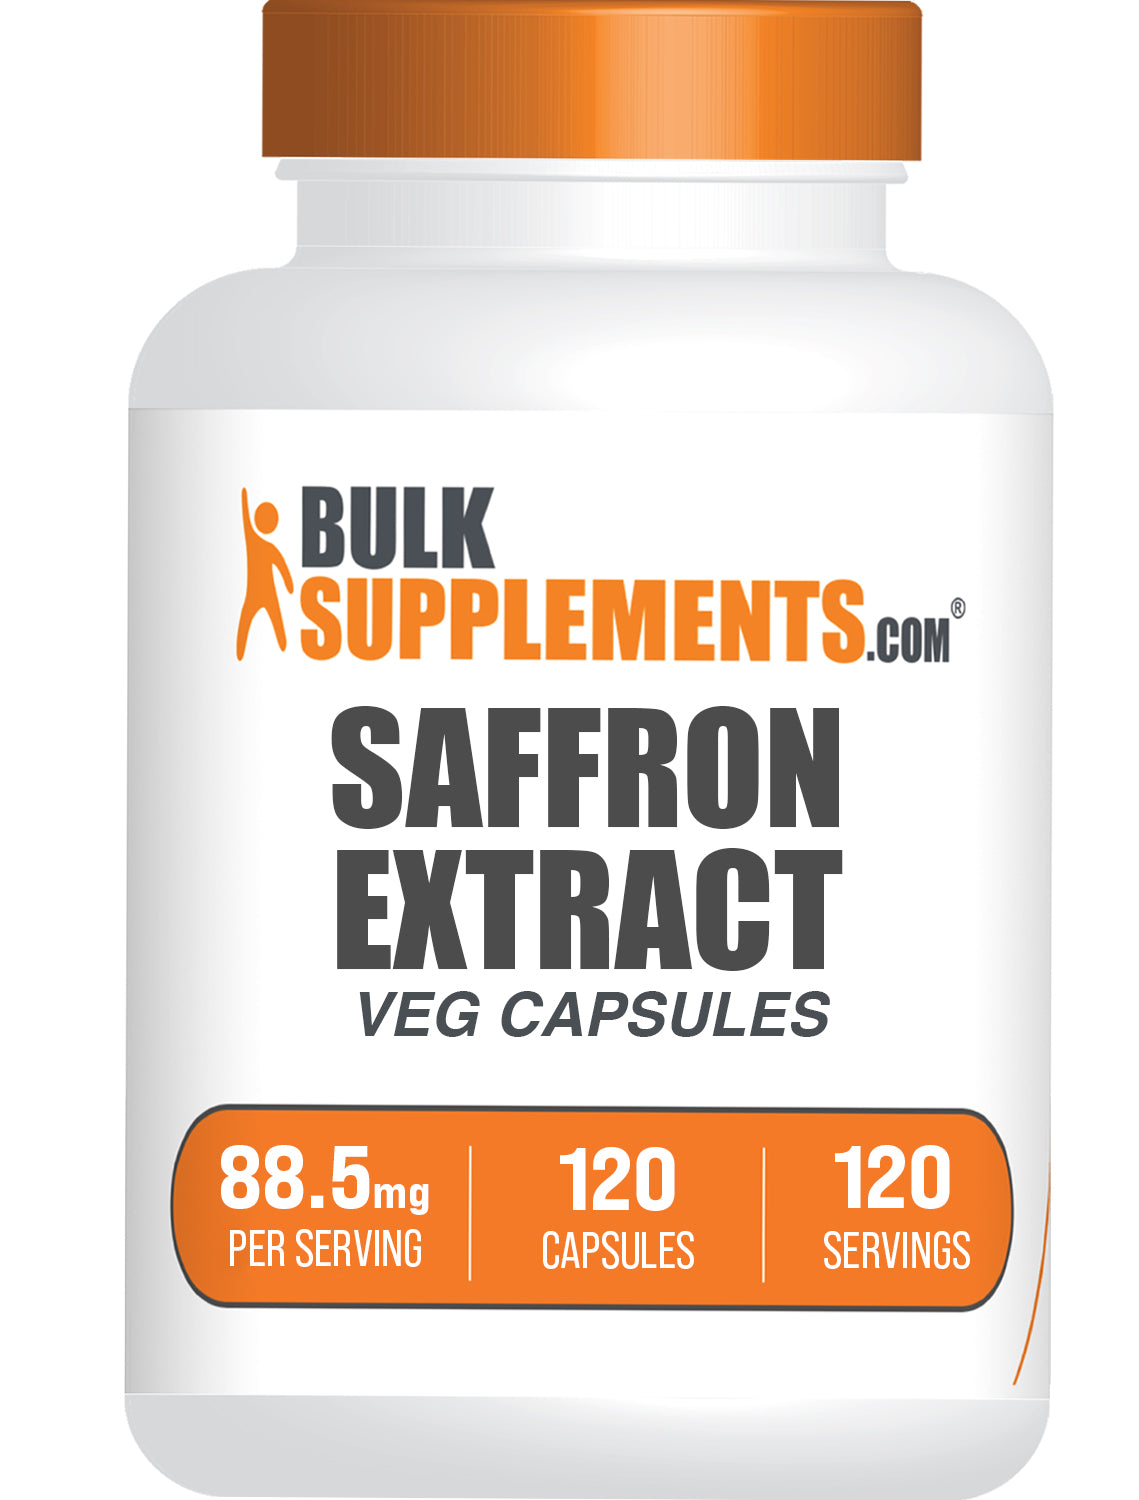 Saffron Extract 120 capsules bottle